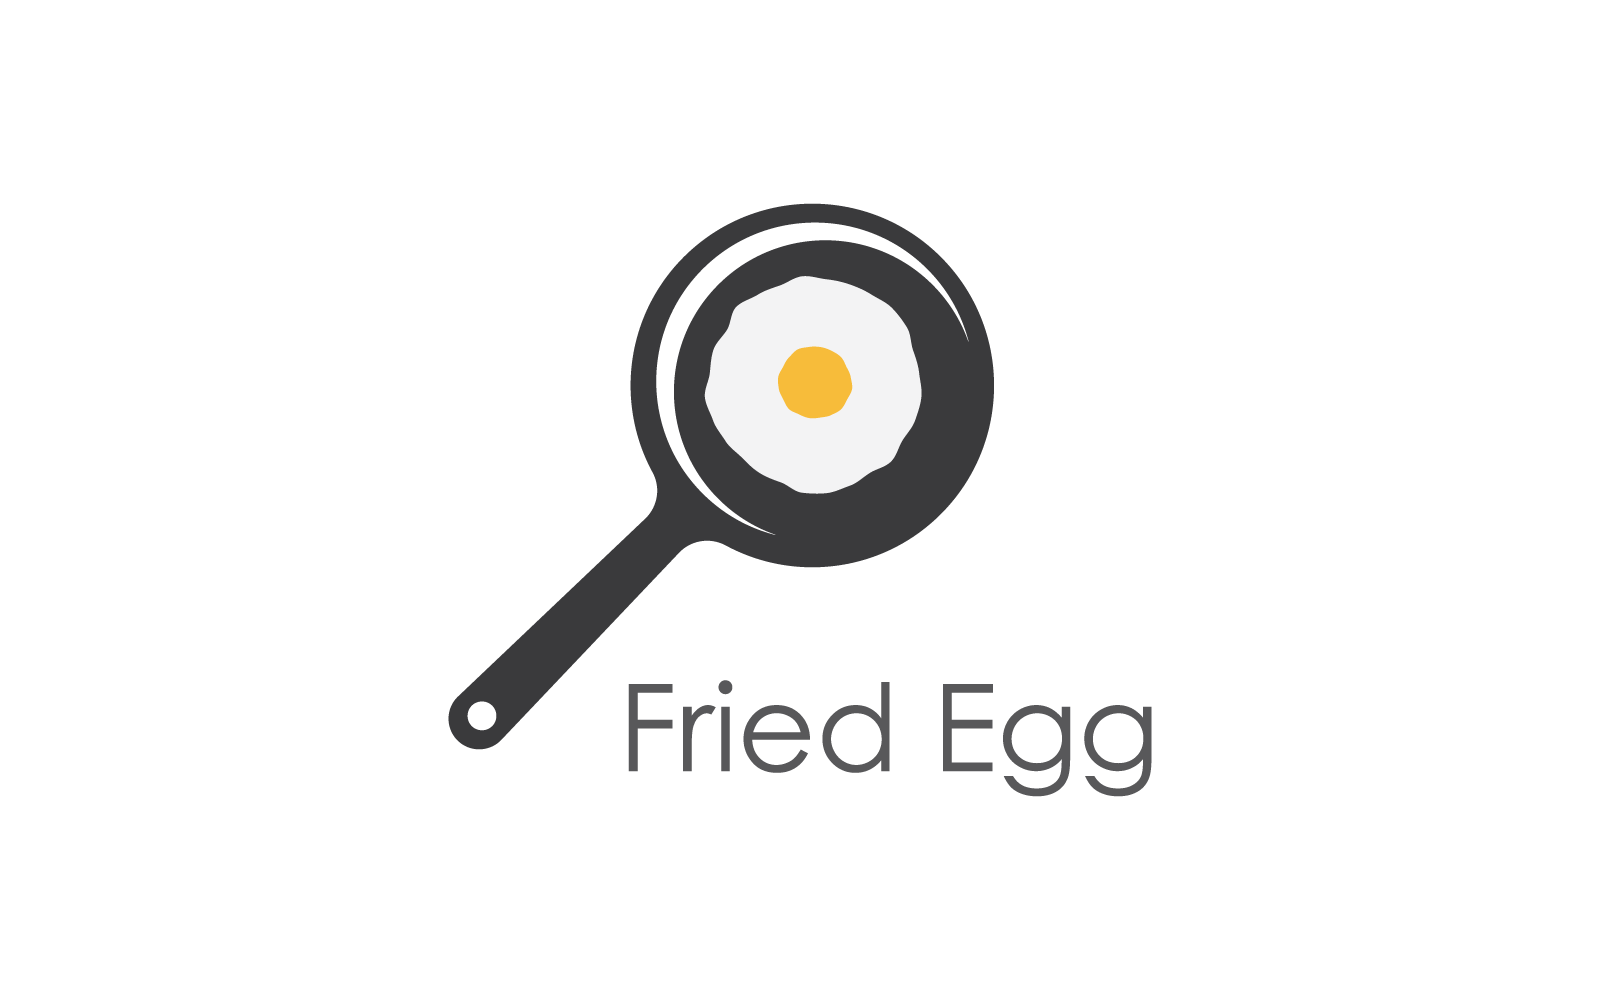 Disegno vettoriale del logo dell'illustrazione dell'uovo fritto